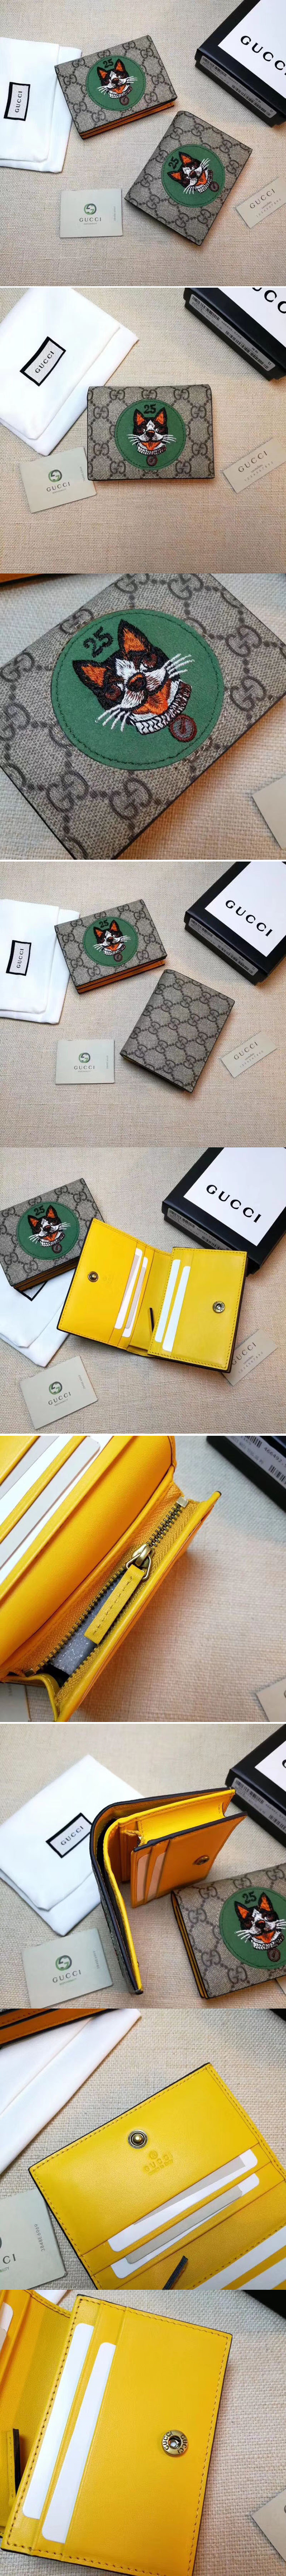 Replica Gucci 506277 GG Supreme card case with Bosco patch Green